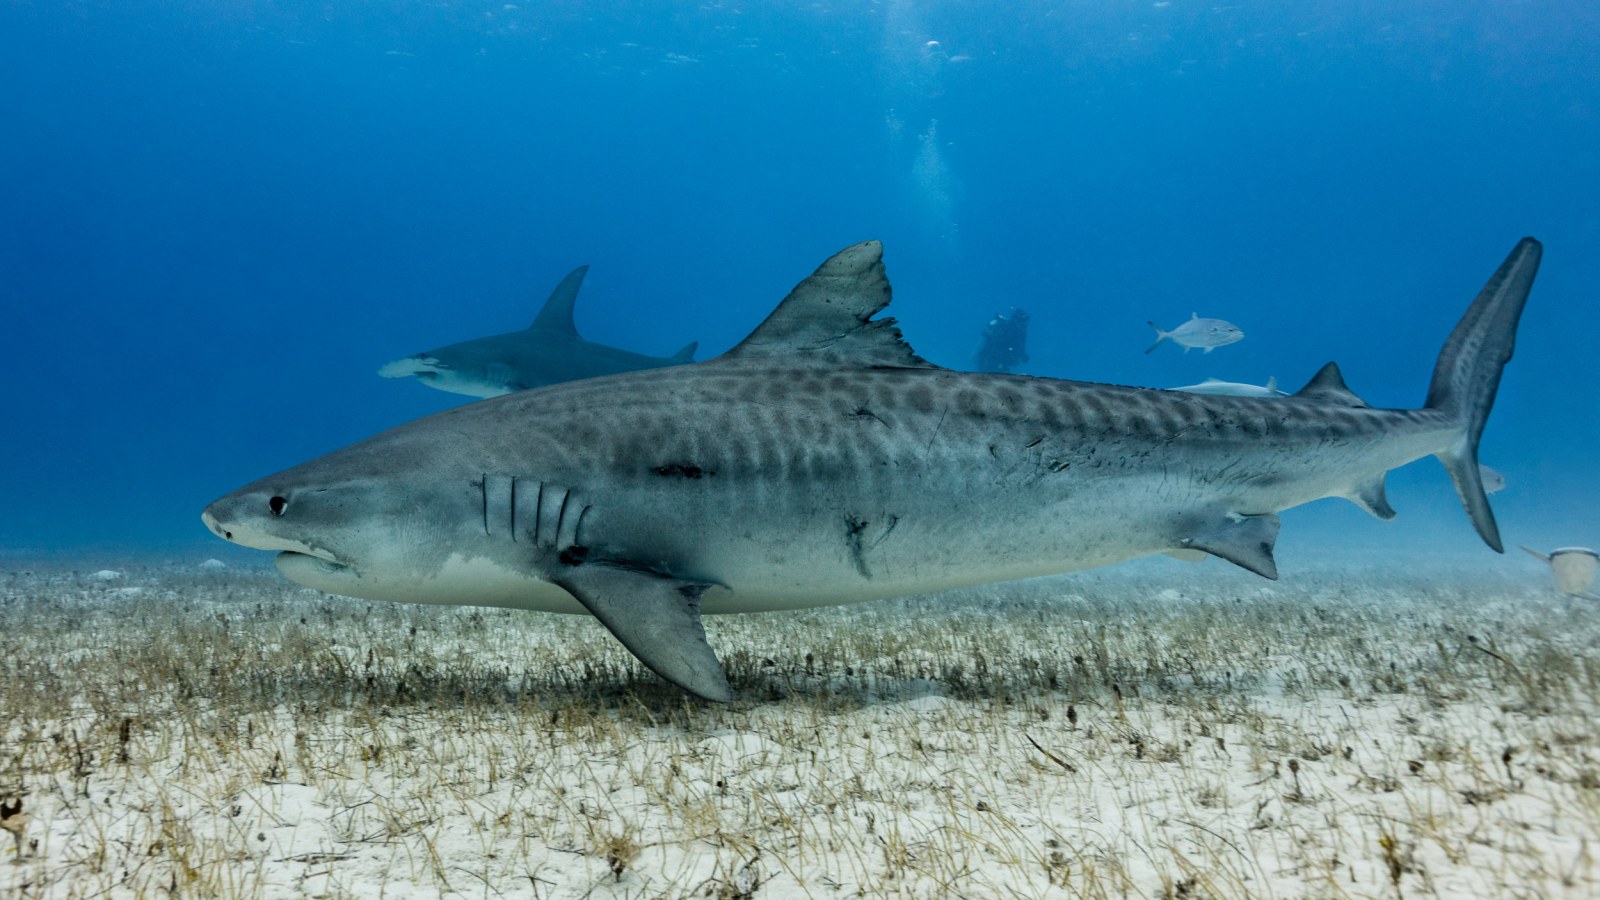 tiger shark vs great white shark